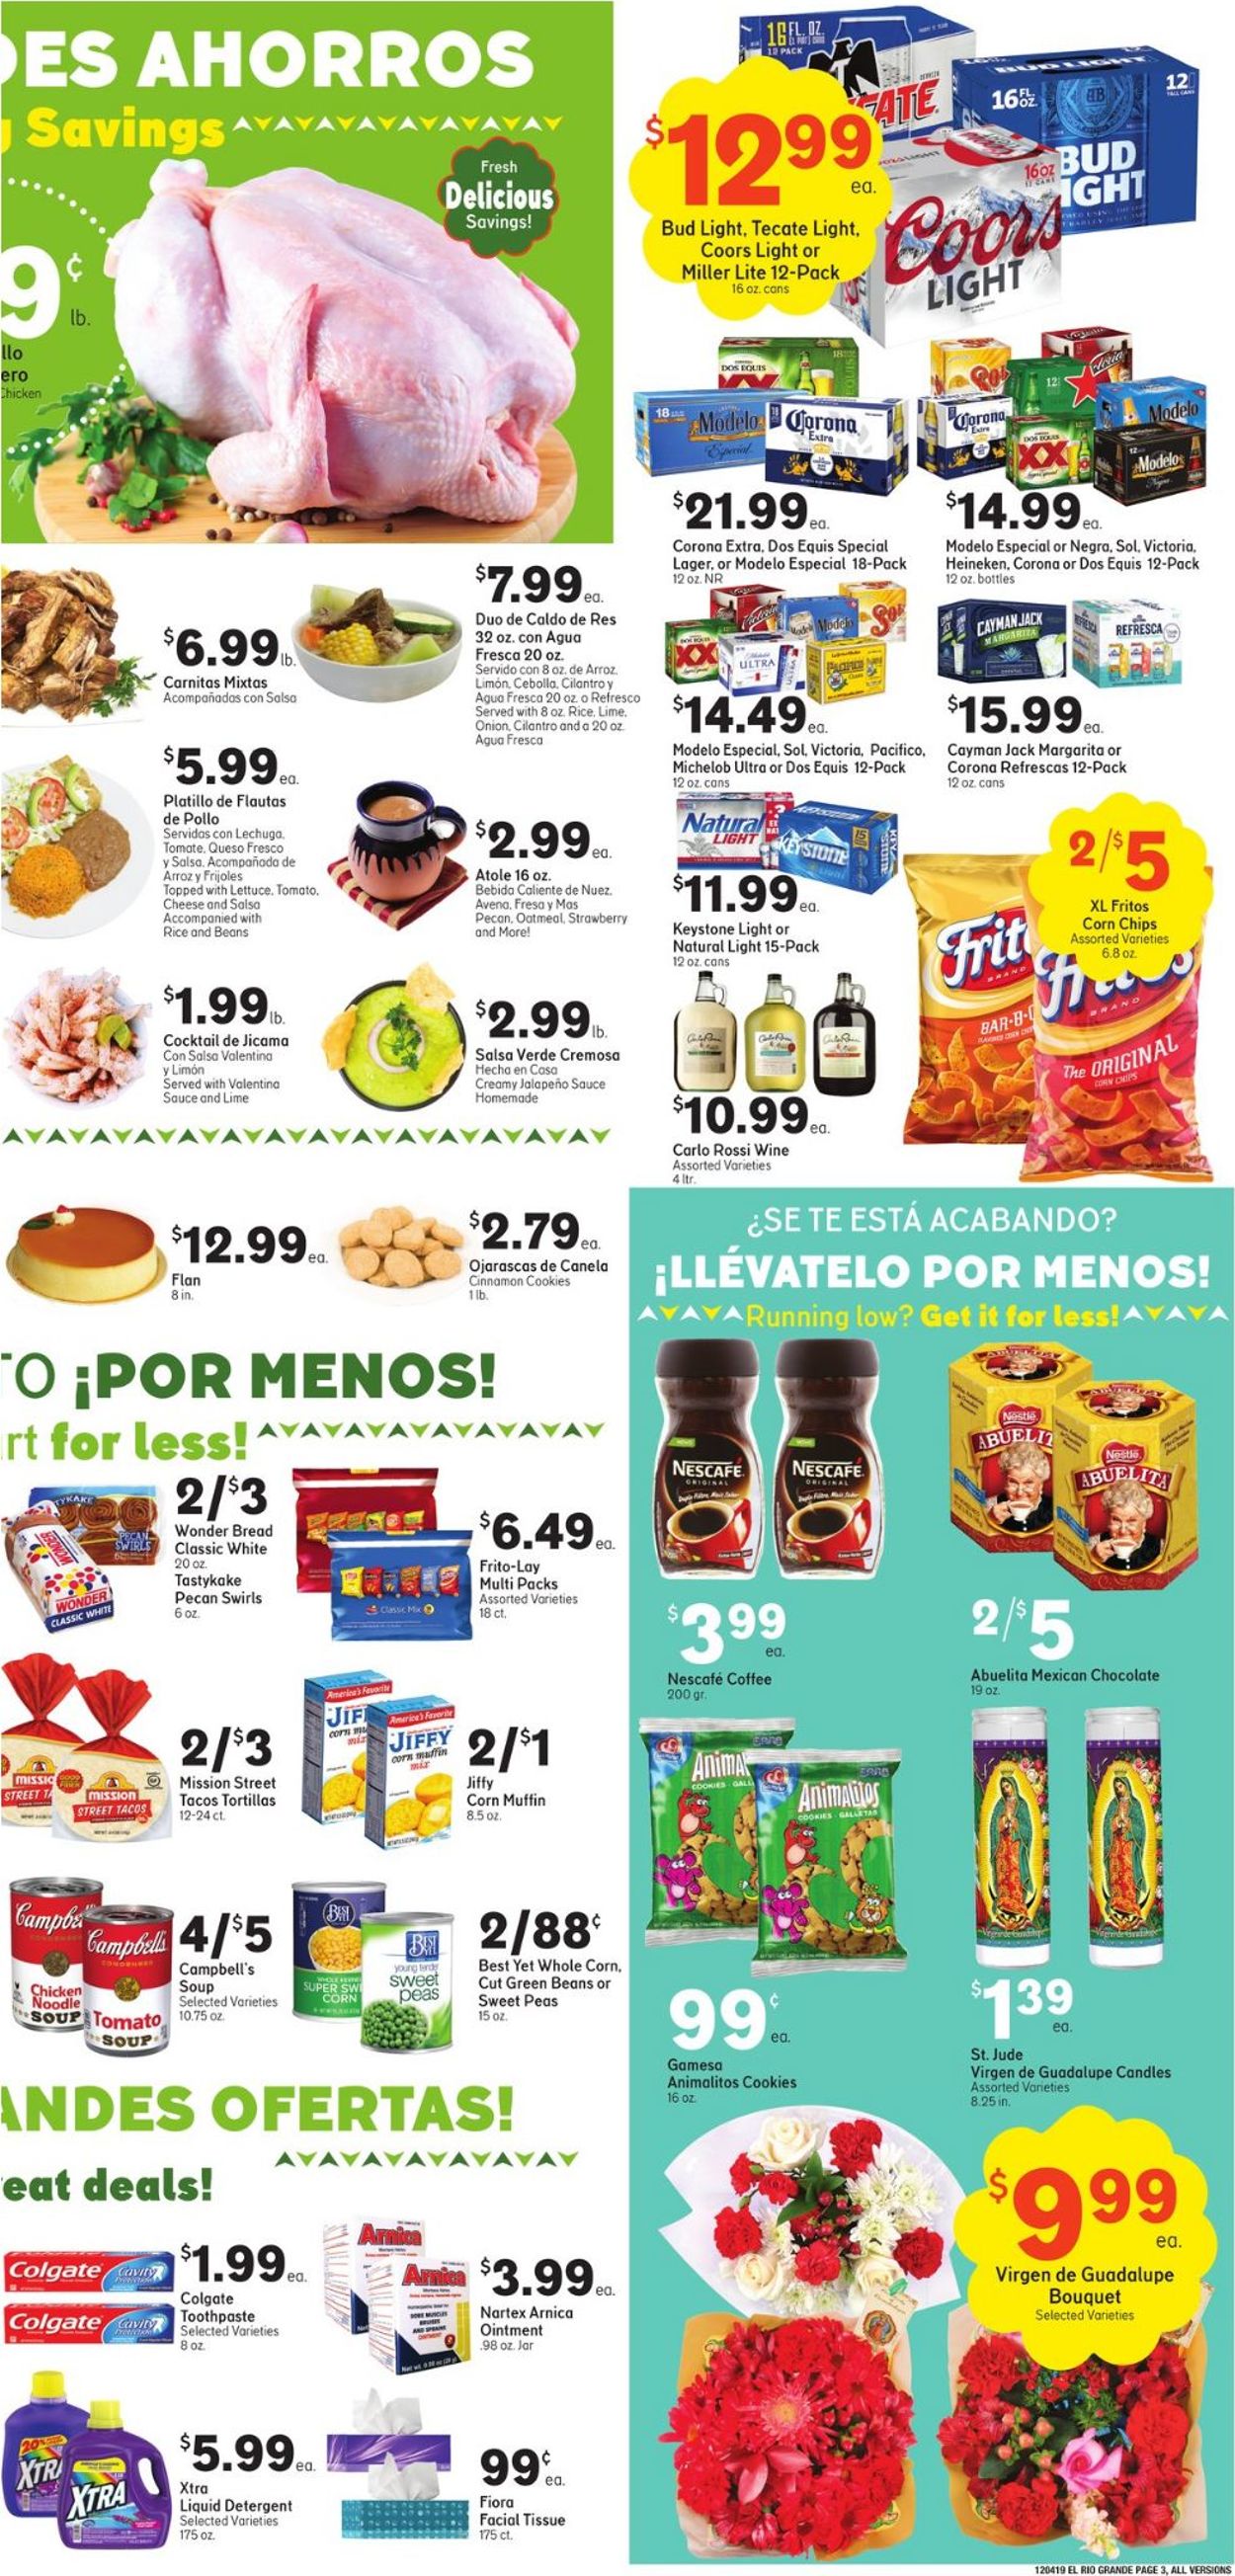 Catalogue El Rio Grande - Holiday Ad 2019 from 12/04/2019